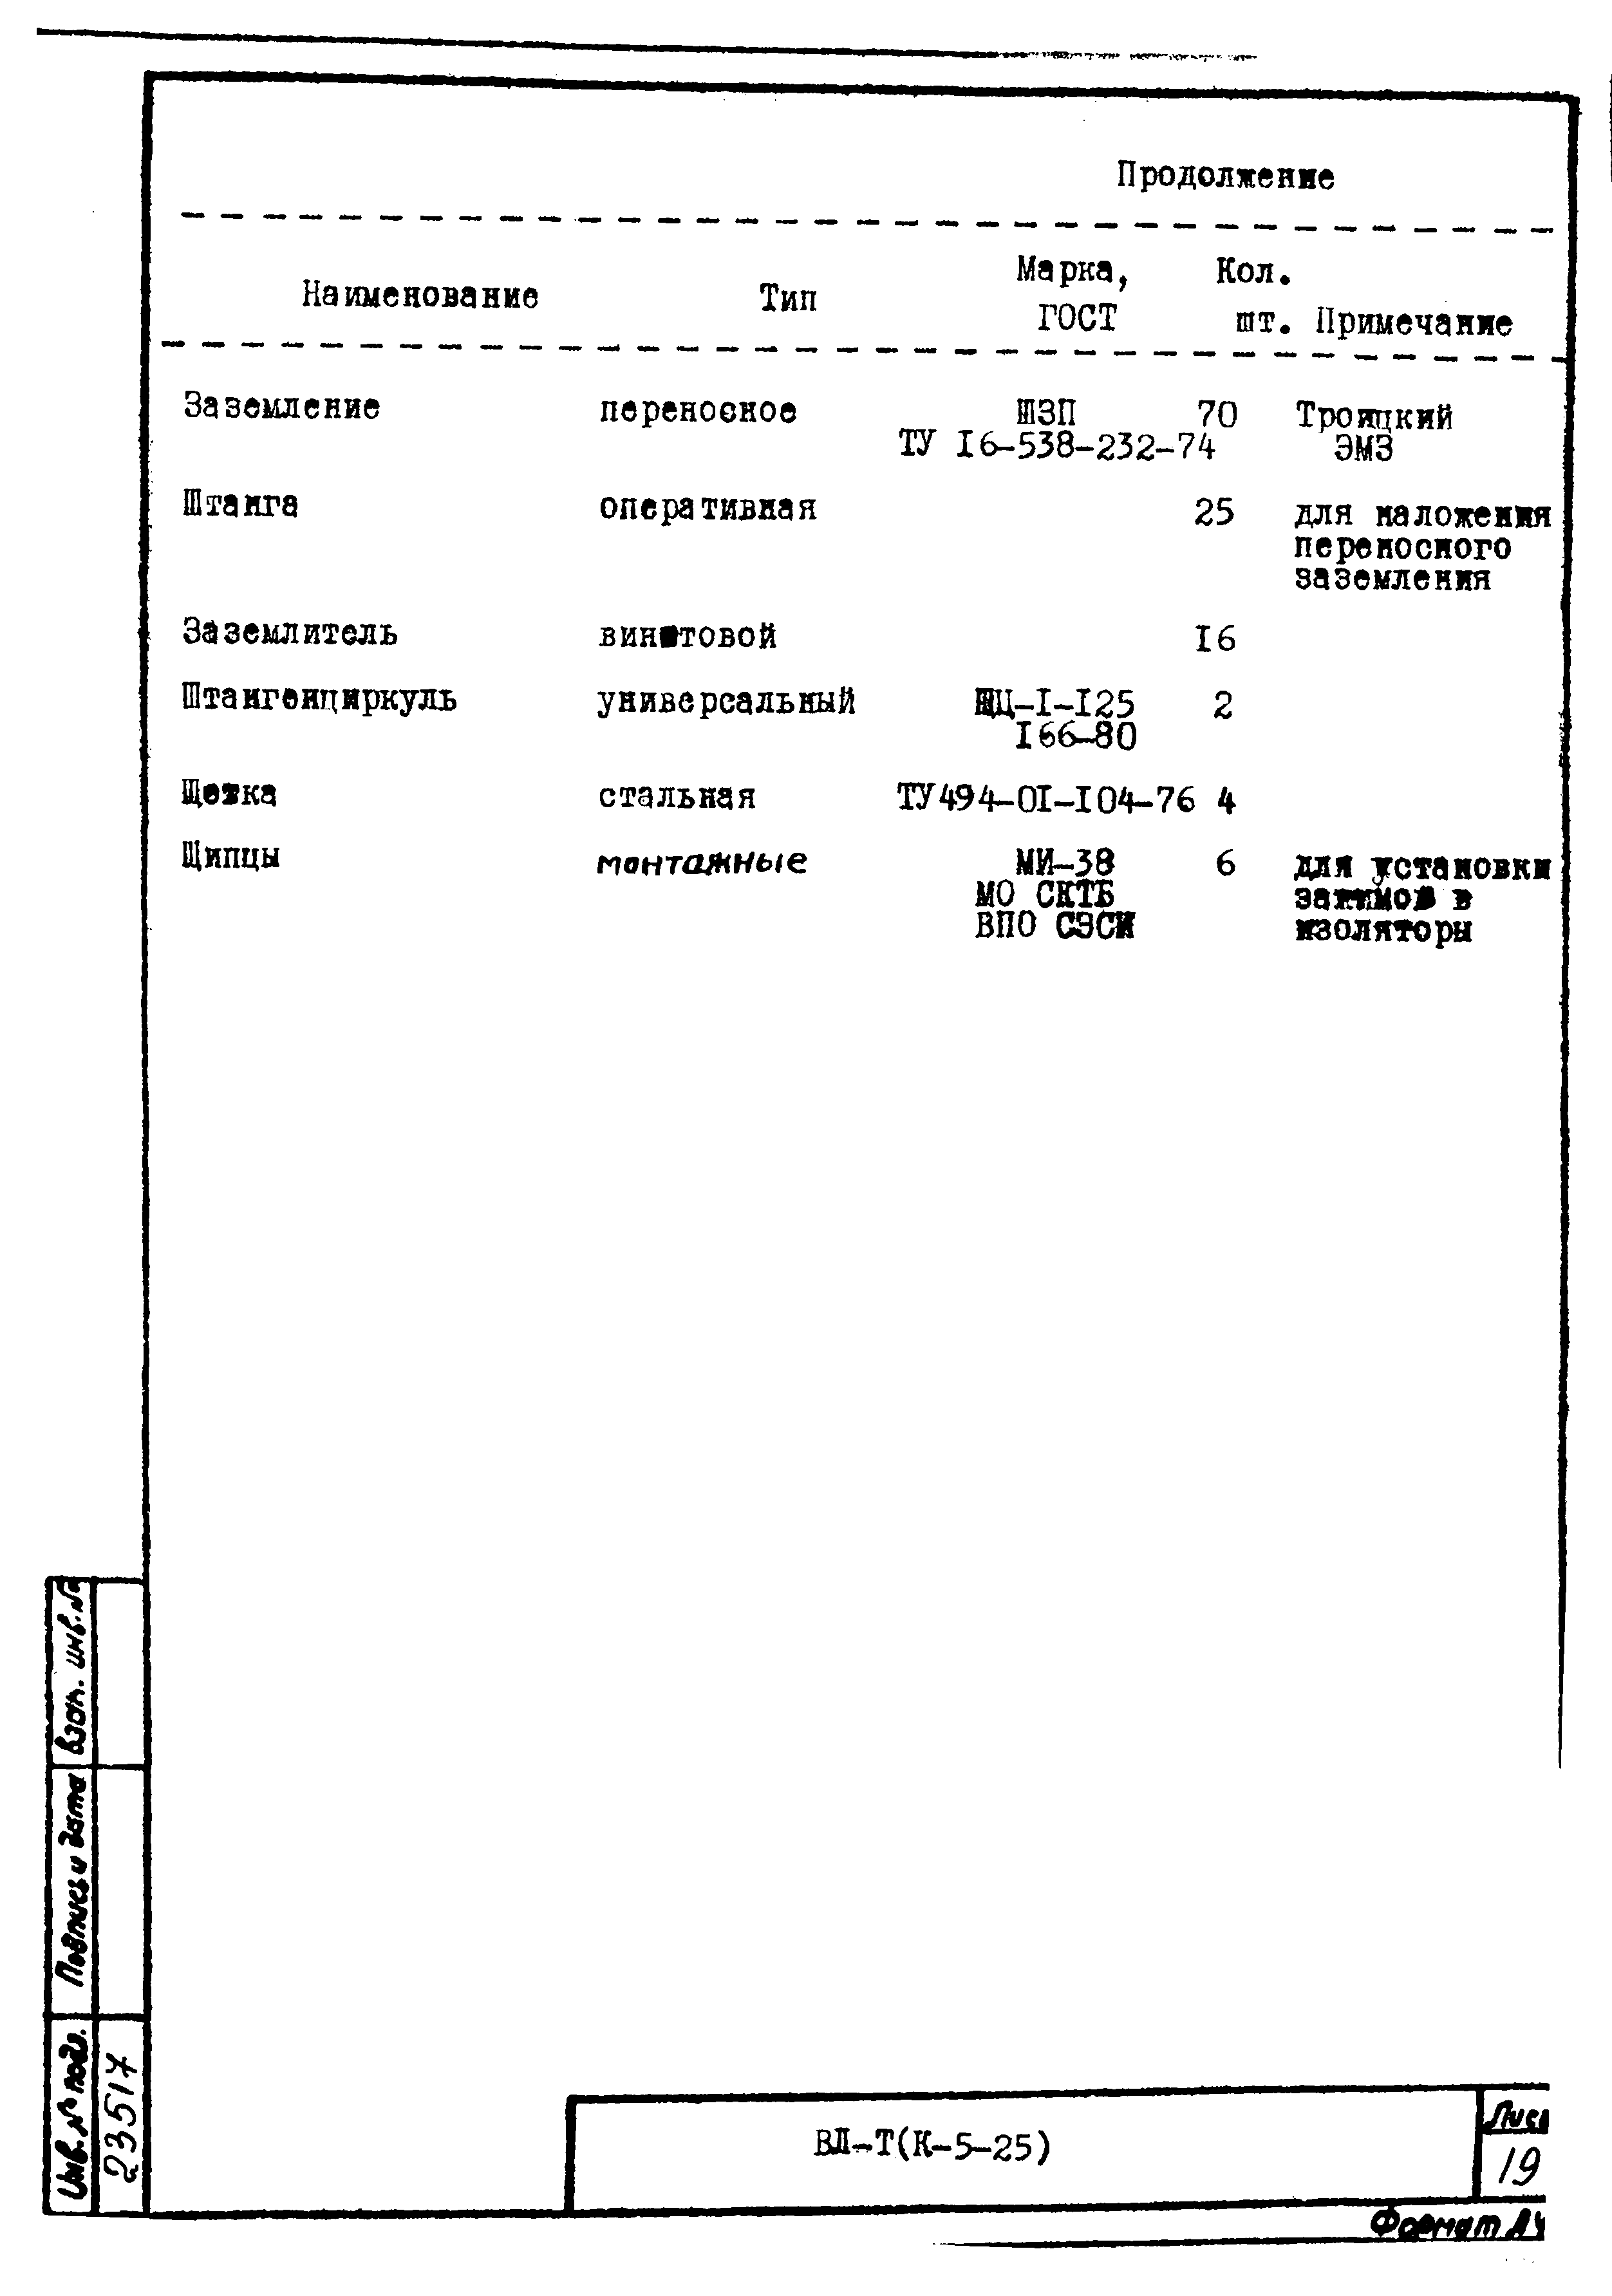 Технологическая карта К-5-25-32